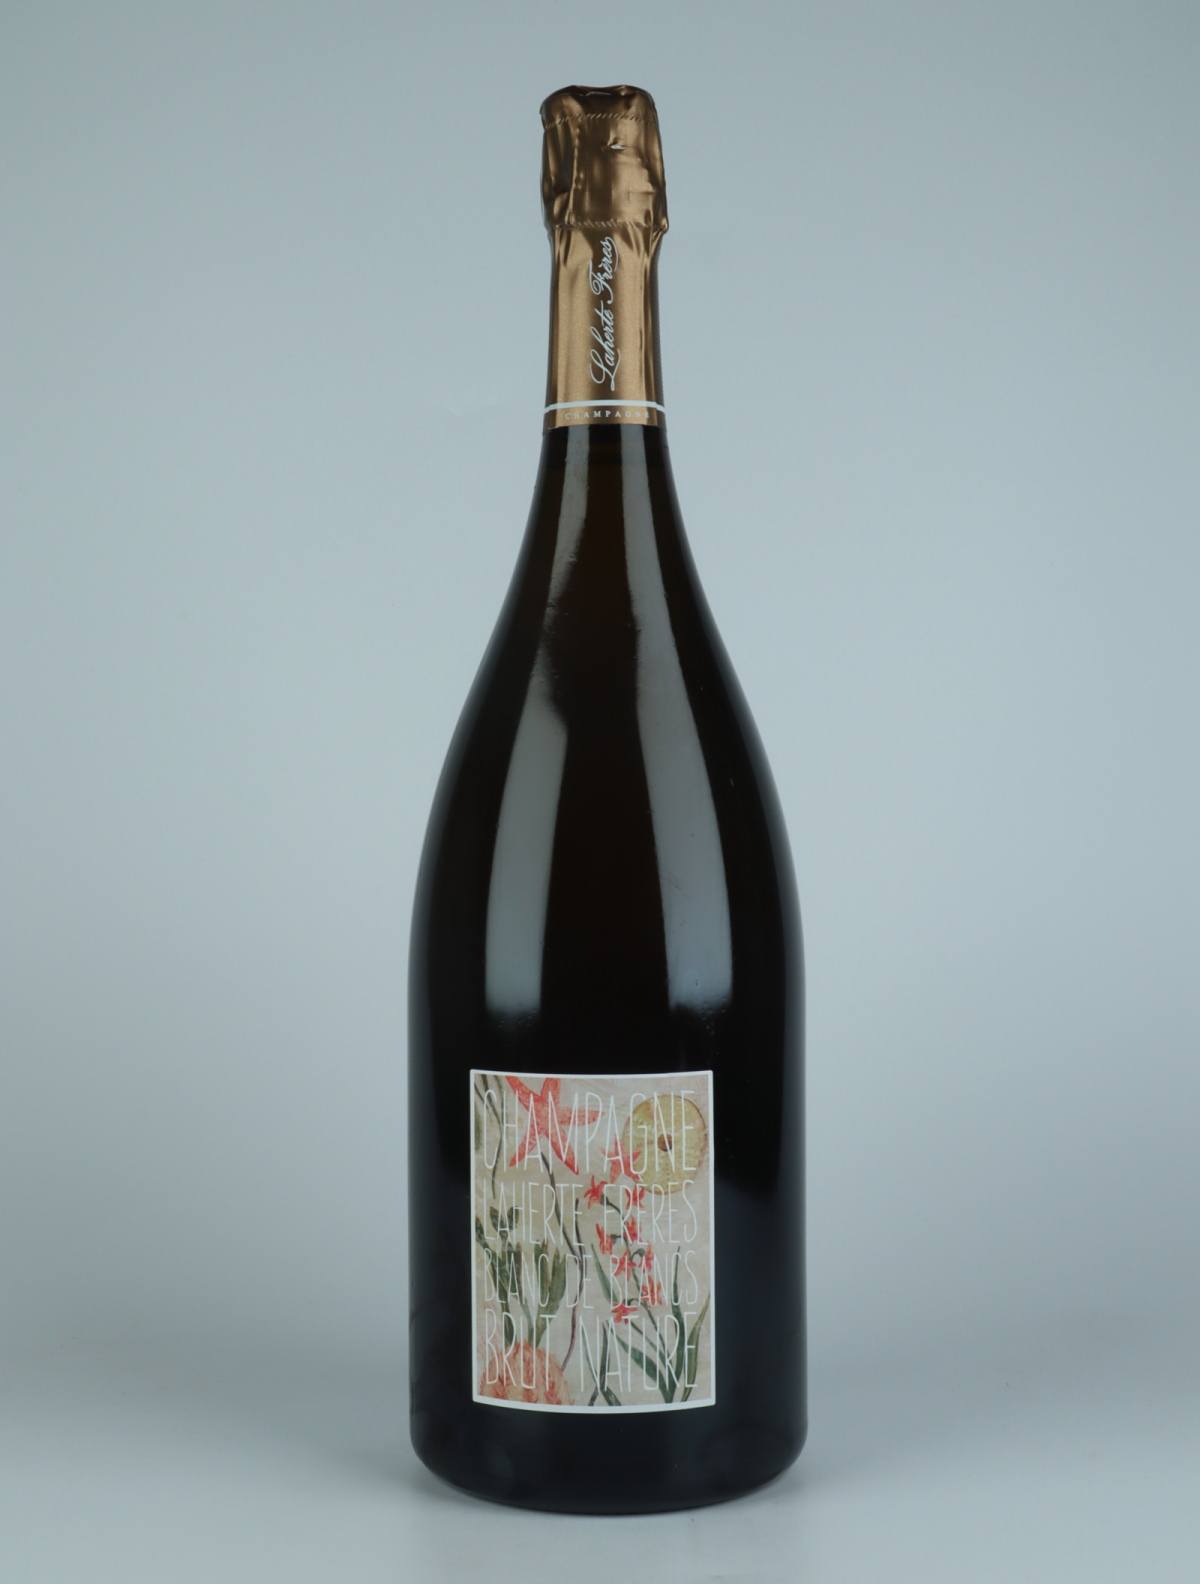 A bottle N.V. Blanc de Blancs - Brut Nature Sparkling from Laherte Frères, Champagne in France